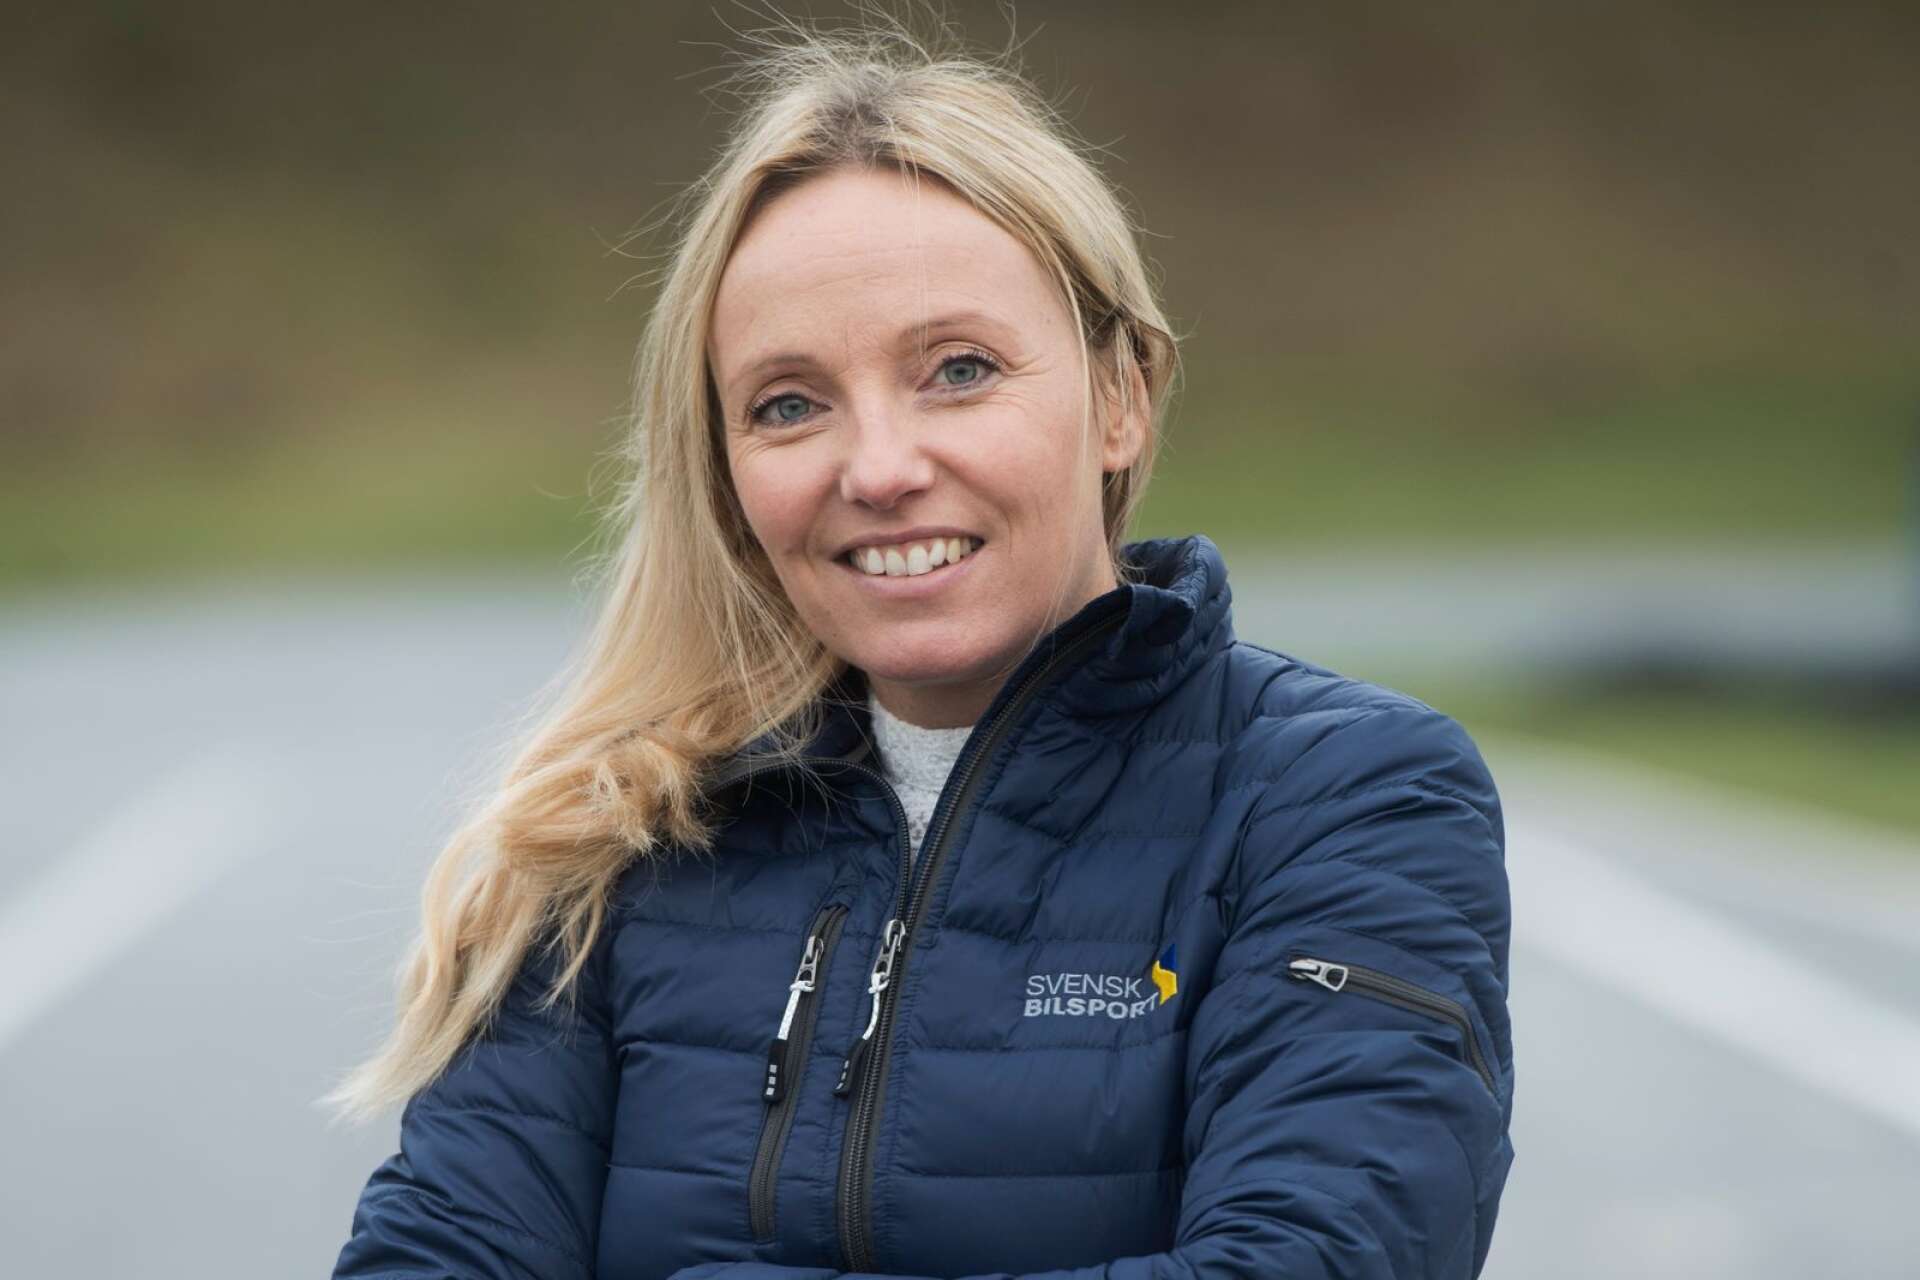 Anna Nordkvist är generalsekreterare i Svenska bilsportförbundet och ny som vicepresident i det internationella förbundet, FIA. Sedan ett år tillbaka bor hon i Karlstad.